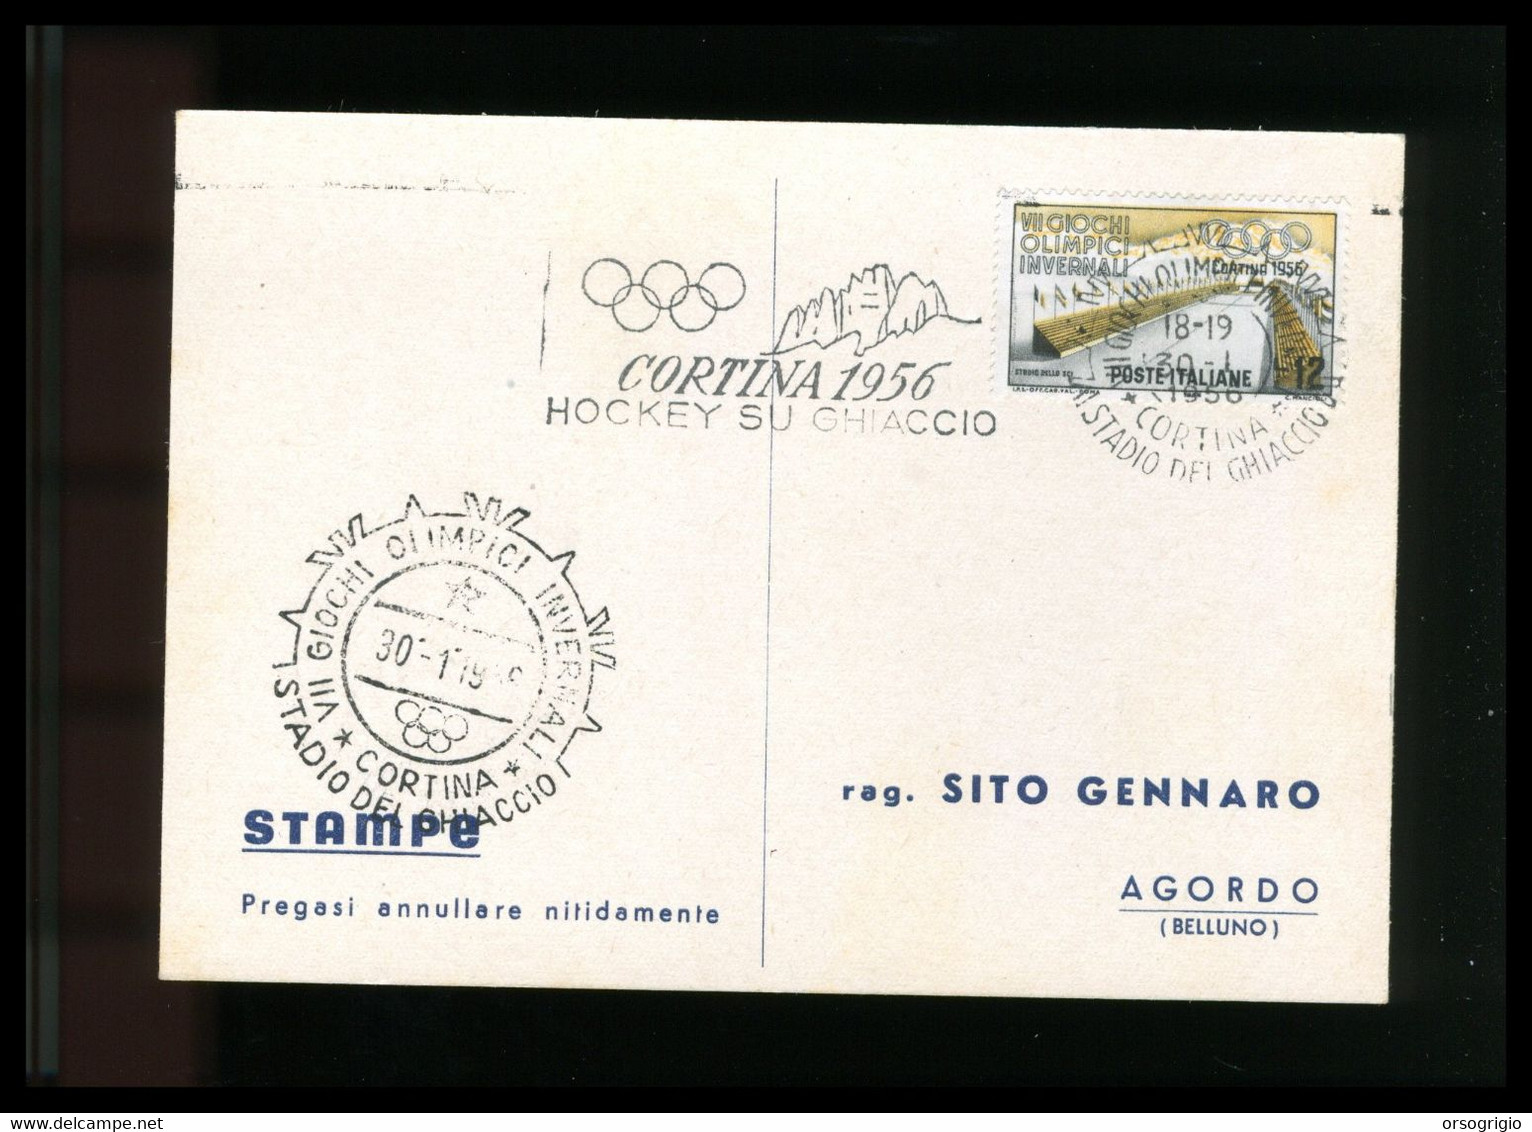 ITALIA - 1956 GIOCHI OLIMPICI INVERNALI Di CORTINA D'AMPEZZO - HOCKEY SU GHIACCIO -  30-1-1956    LUSSO - Hiver 1956: Cortina D'Ampezzo